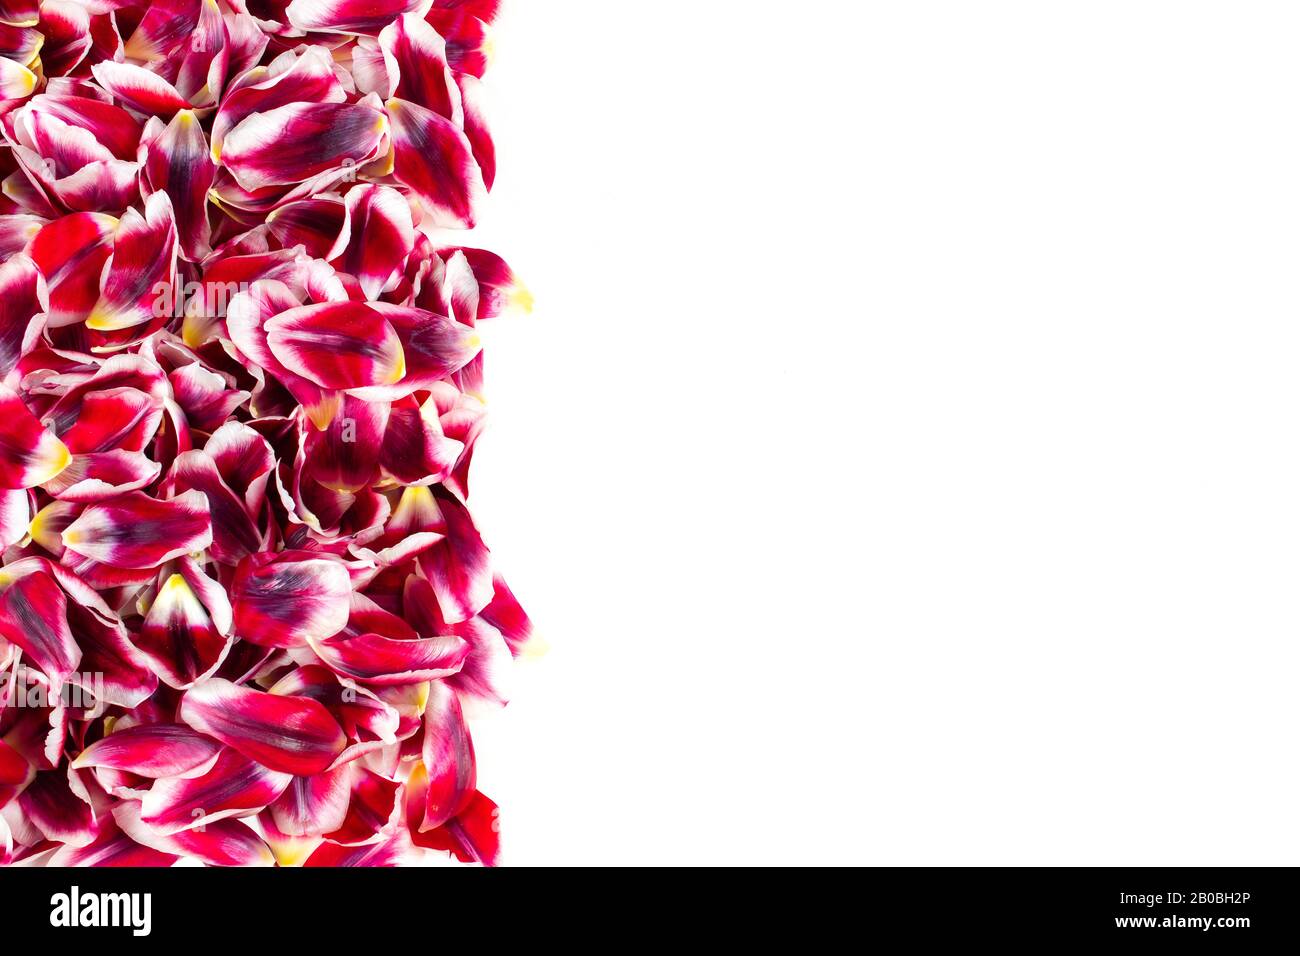 Bordo verticale con un gruppo degli stessi petali di tulipani rossi rosa. Sfondo bianco con spazio per il testo. Foto Stock